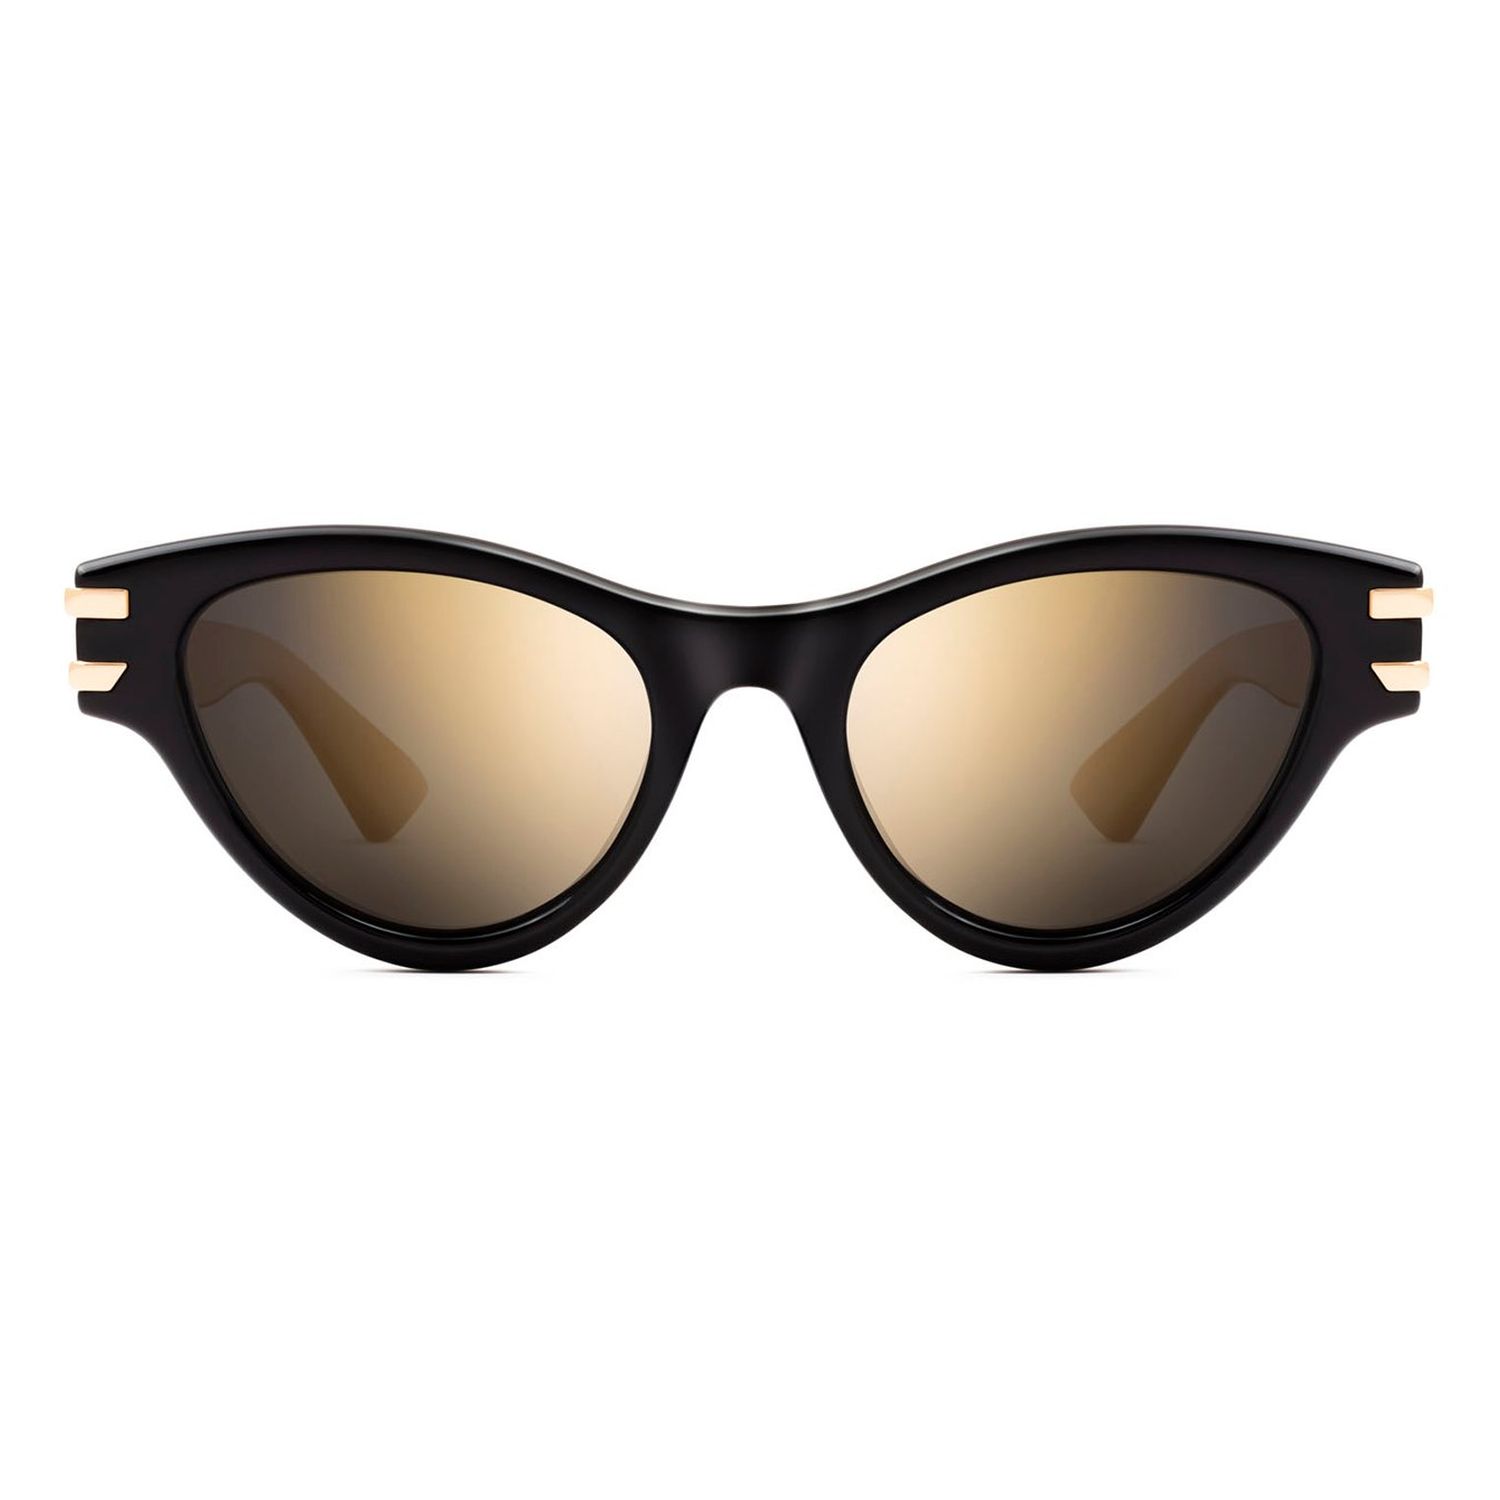 Gafas de sol Polar Sunglasses HOPE 77GOLD en color Gold calibre 53 Polarizada - Óptica Doñana Visión